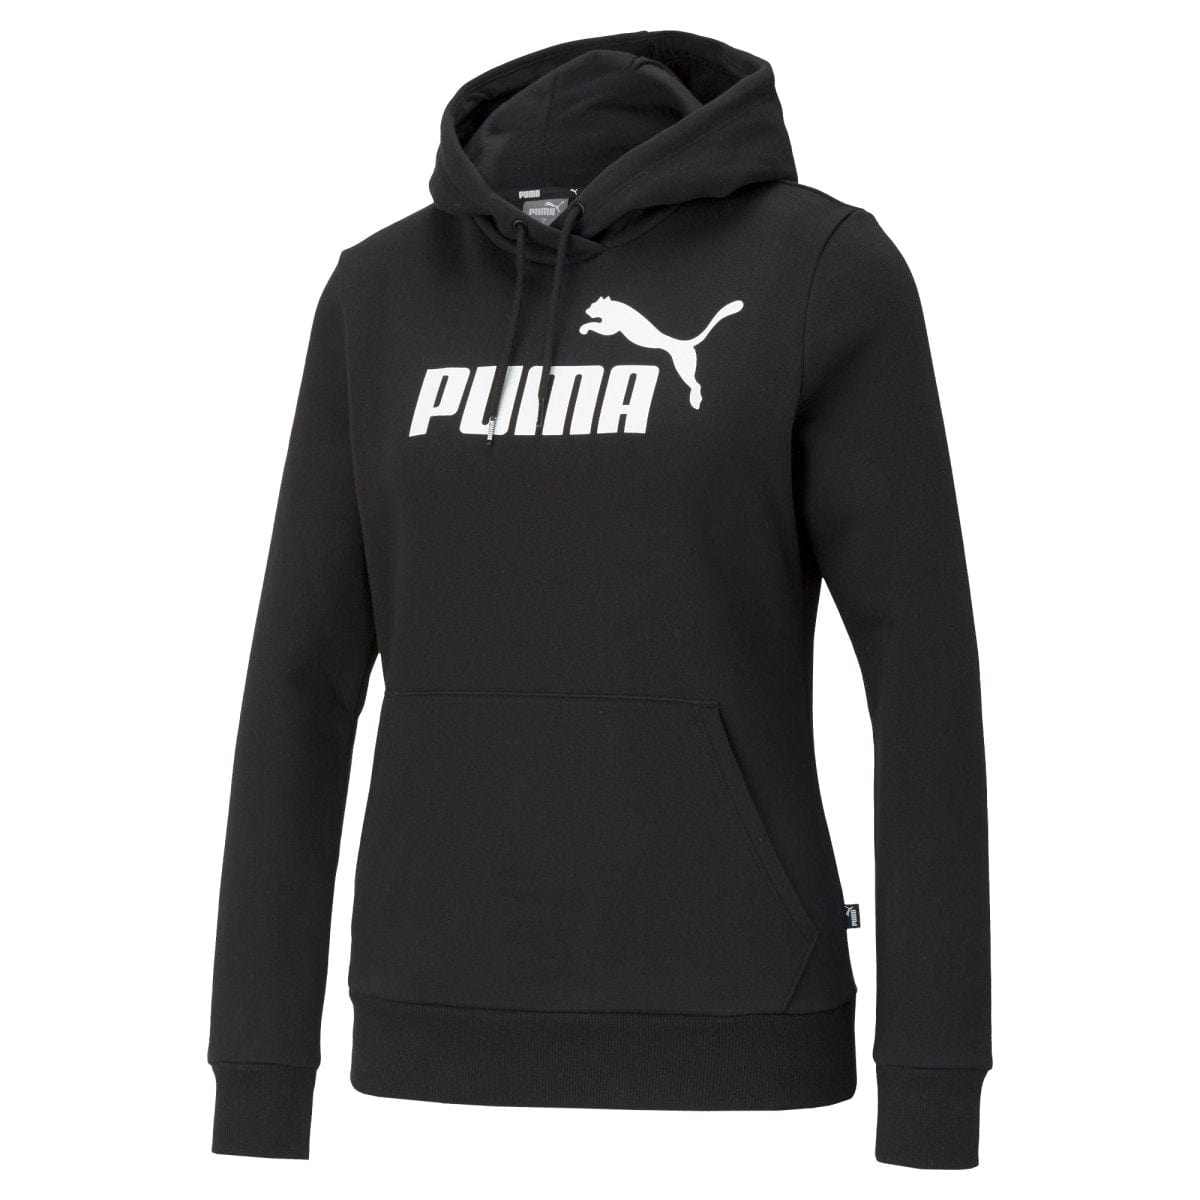 Puma PUMA WOMEN'S ESSENTIAL LOGO FLEECE BLACK HOODIE - INSPORT